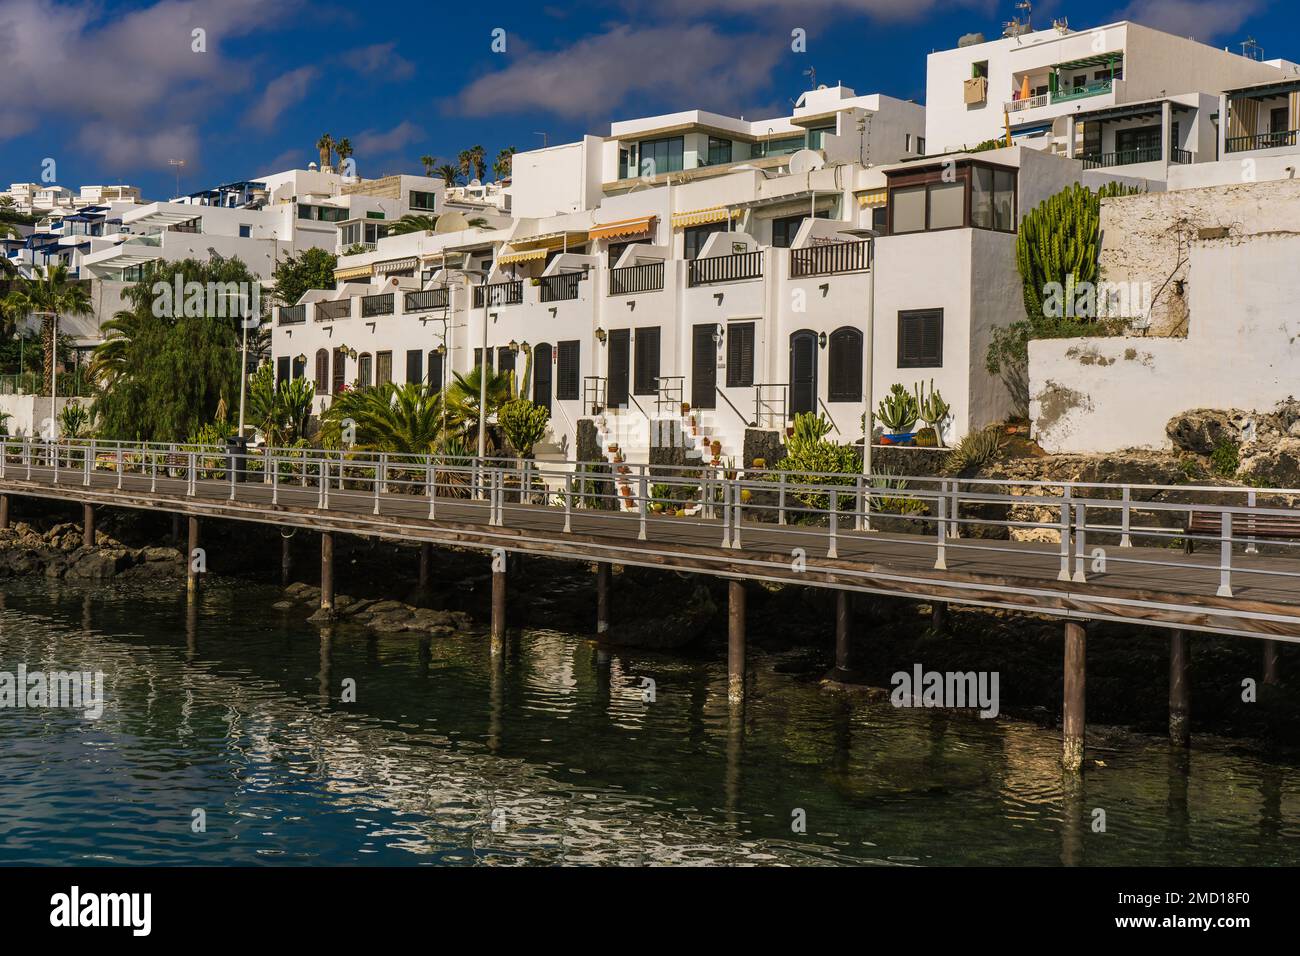 Edifici intorno al porto e la passerella pedonale / Promenade a Puerto del carmen a Lanzarote. Foto Stock